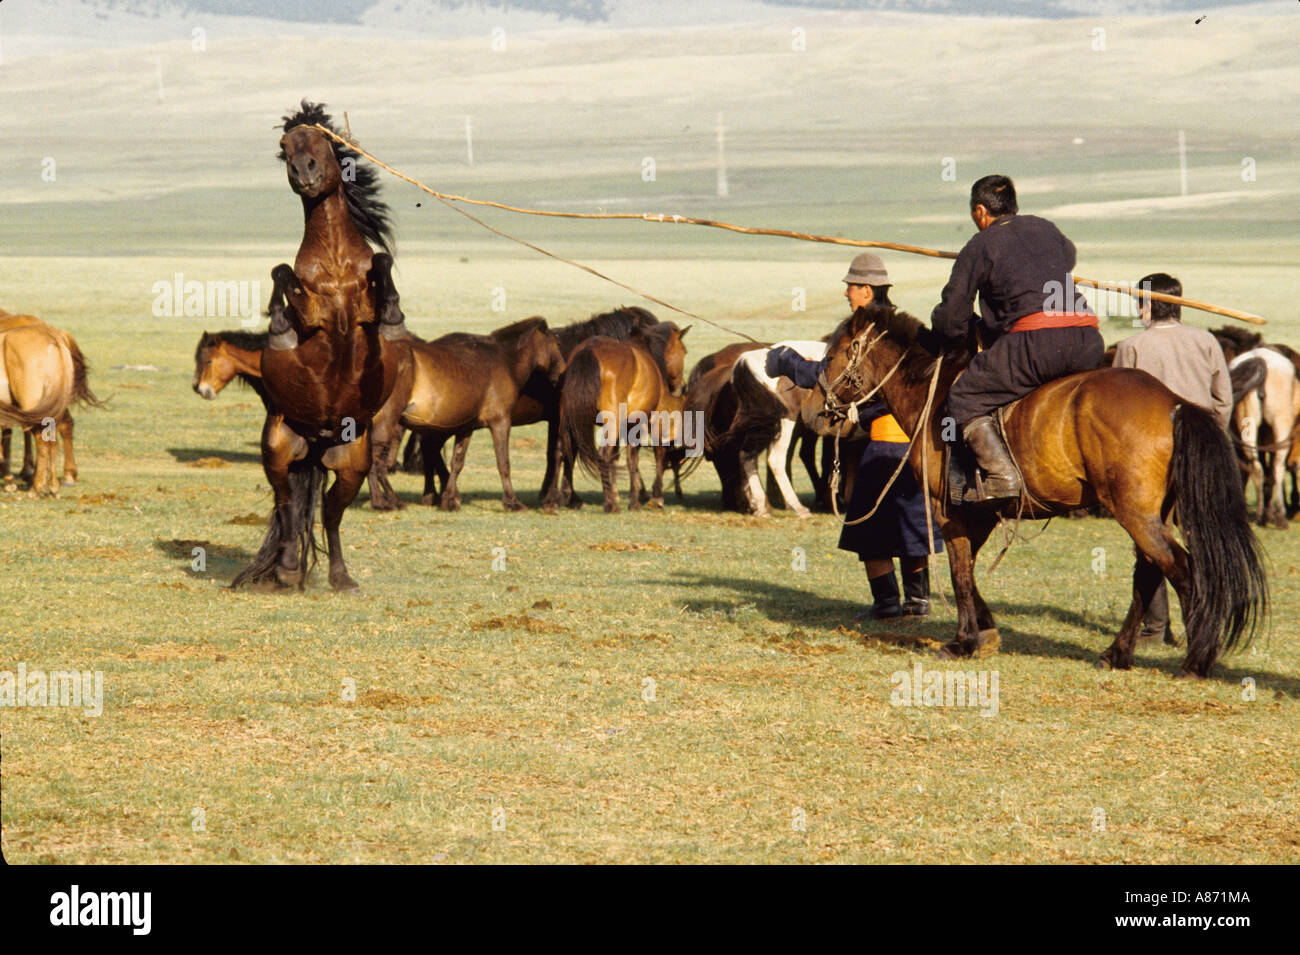 La Mongolie un étalon d'être pris avec l'Urga traditionnel dans la province de Bulgan lasso Banque D'Images